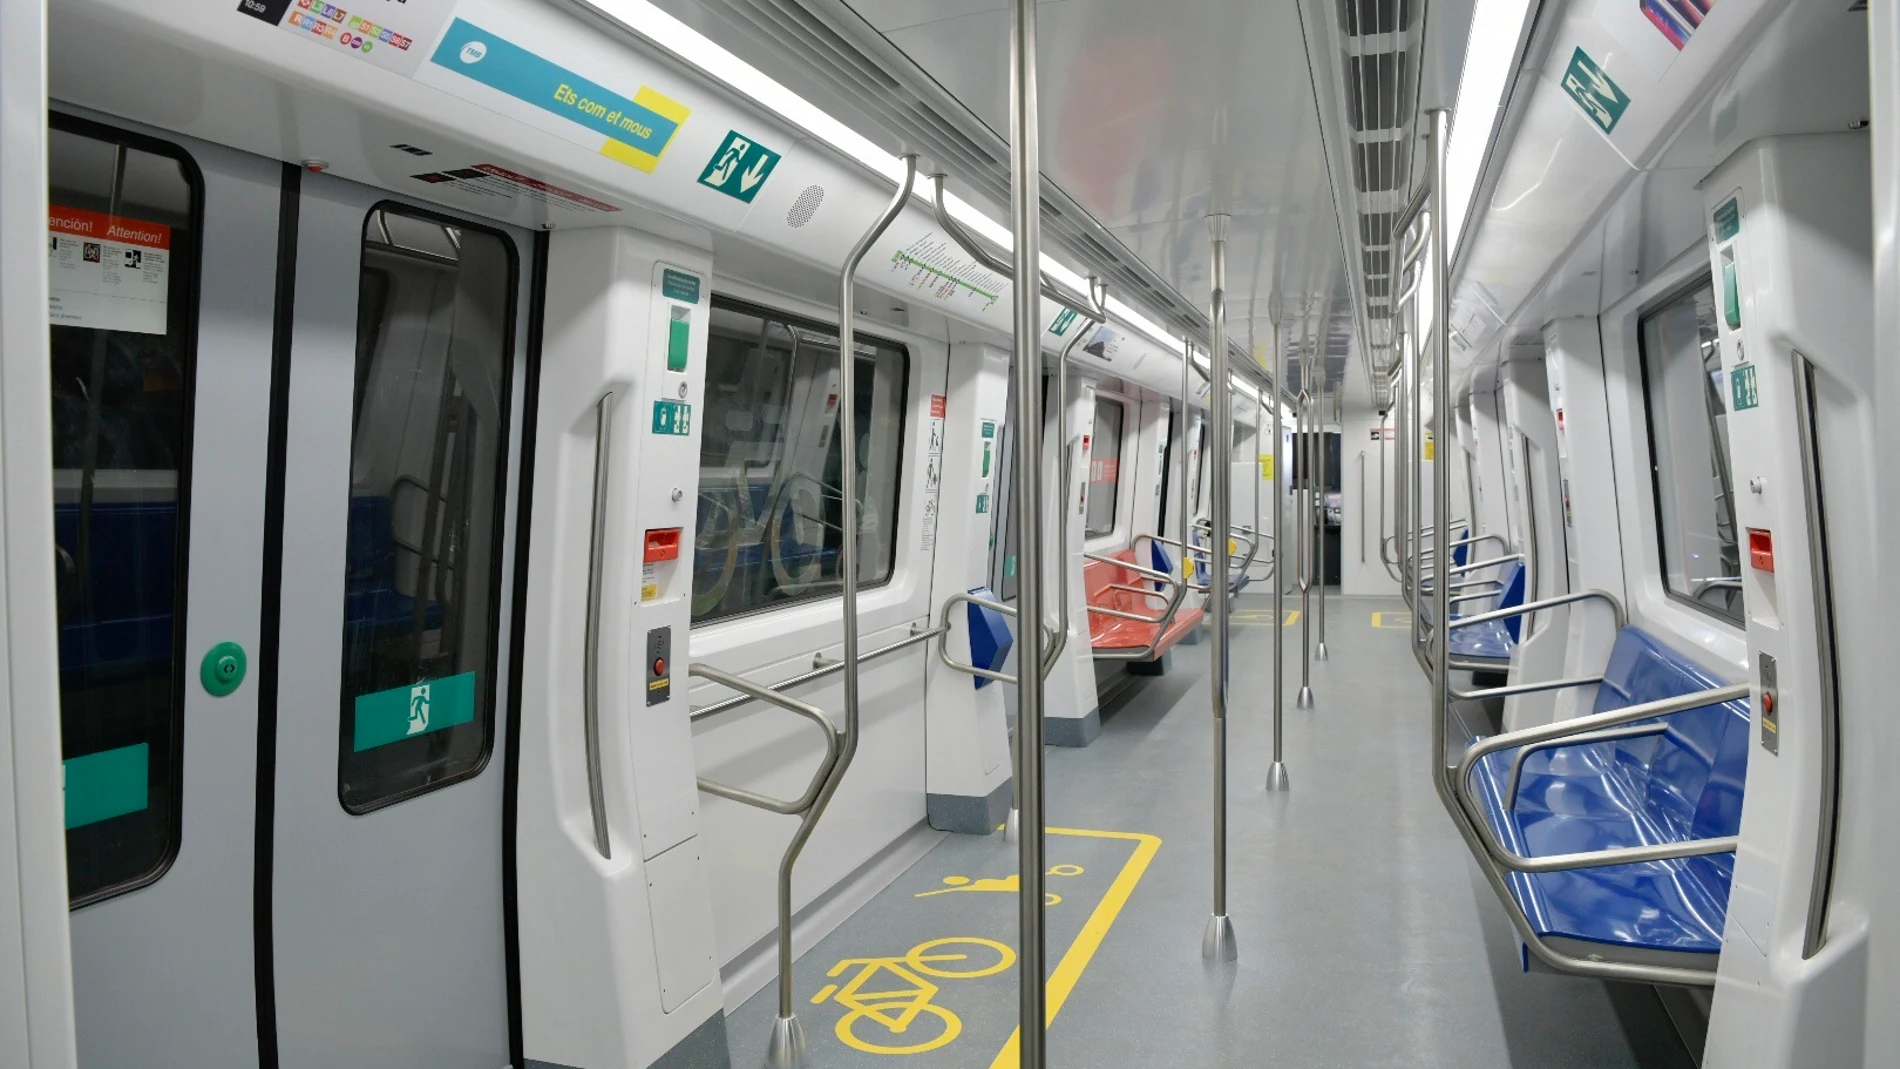 TMB incorporará nuevos trenes accesibles en la L1 y L3 del Metro en 2022.TMB14/05/2021